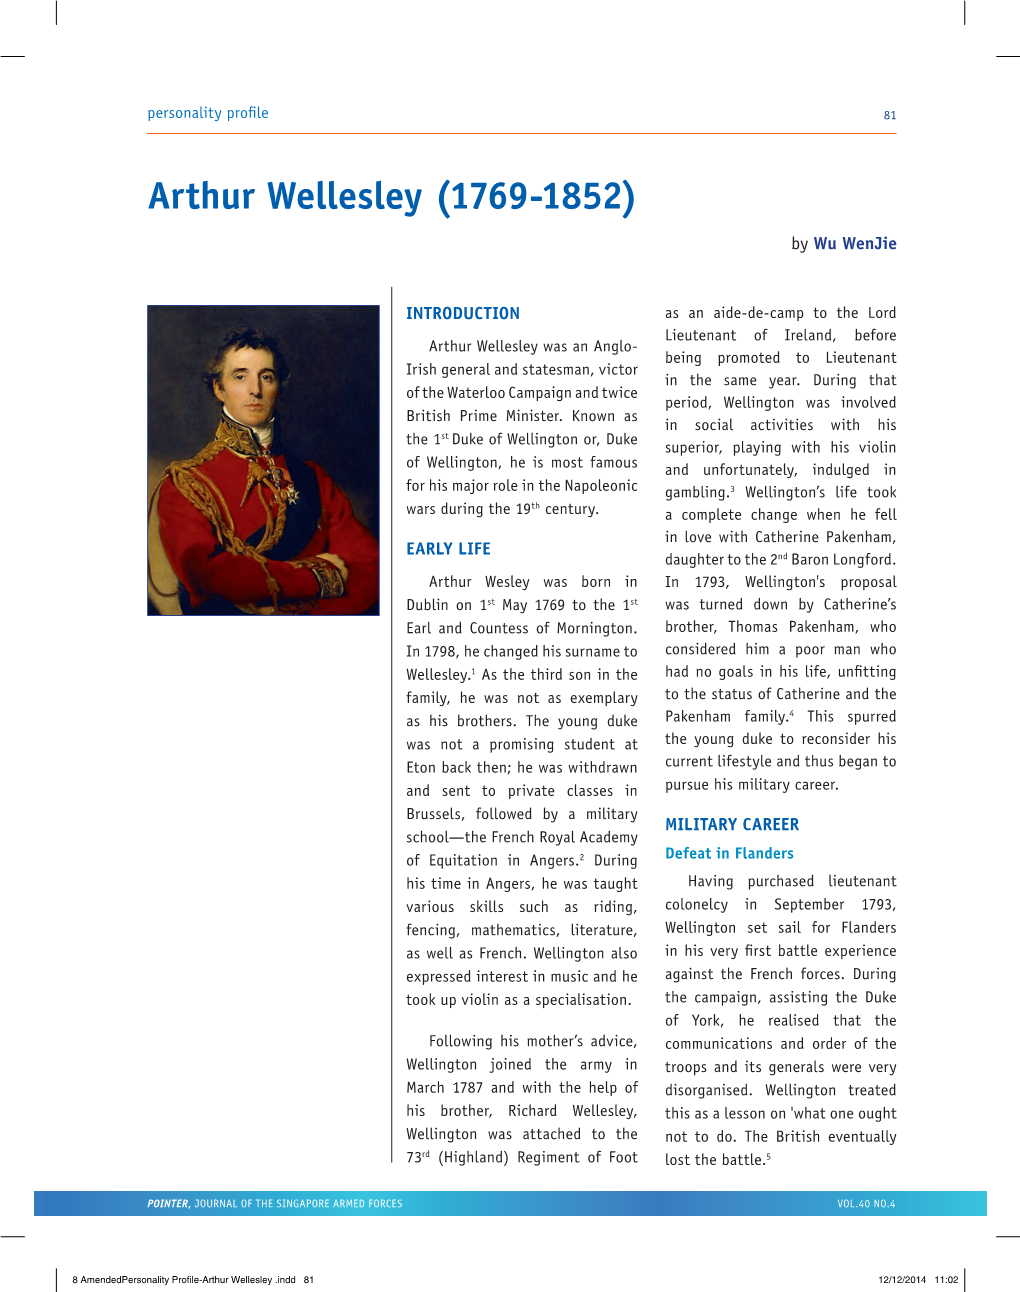 Arthur Wellesley (1769-1852) by Wu Wenjie